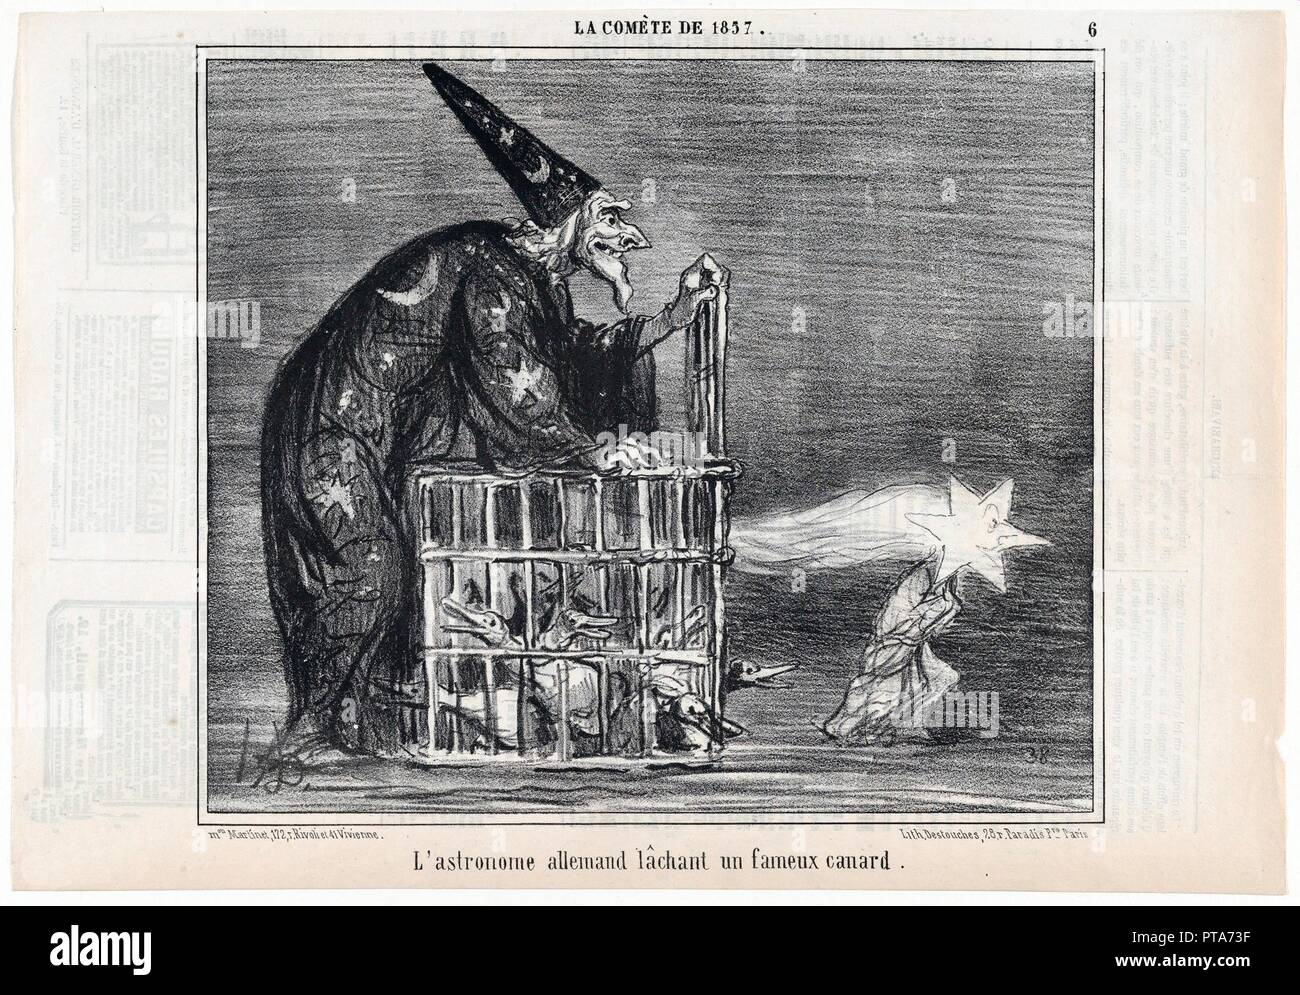 La Comète de 1857, L'astronome allemand lâchant un fameux canard, from  Le Charivari, pub. 1858.  Creator: Honoré Daumier (1808–1879 ). Stock Photo